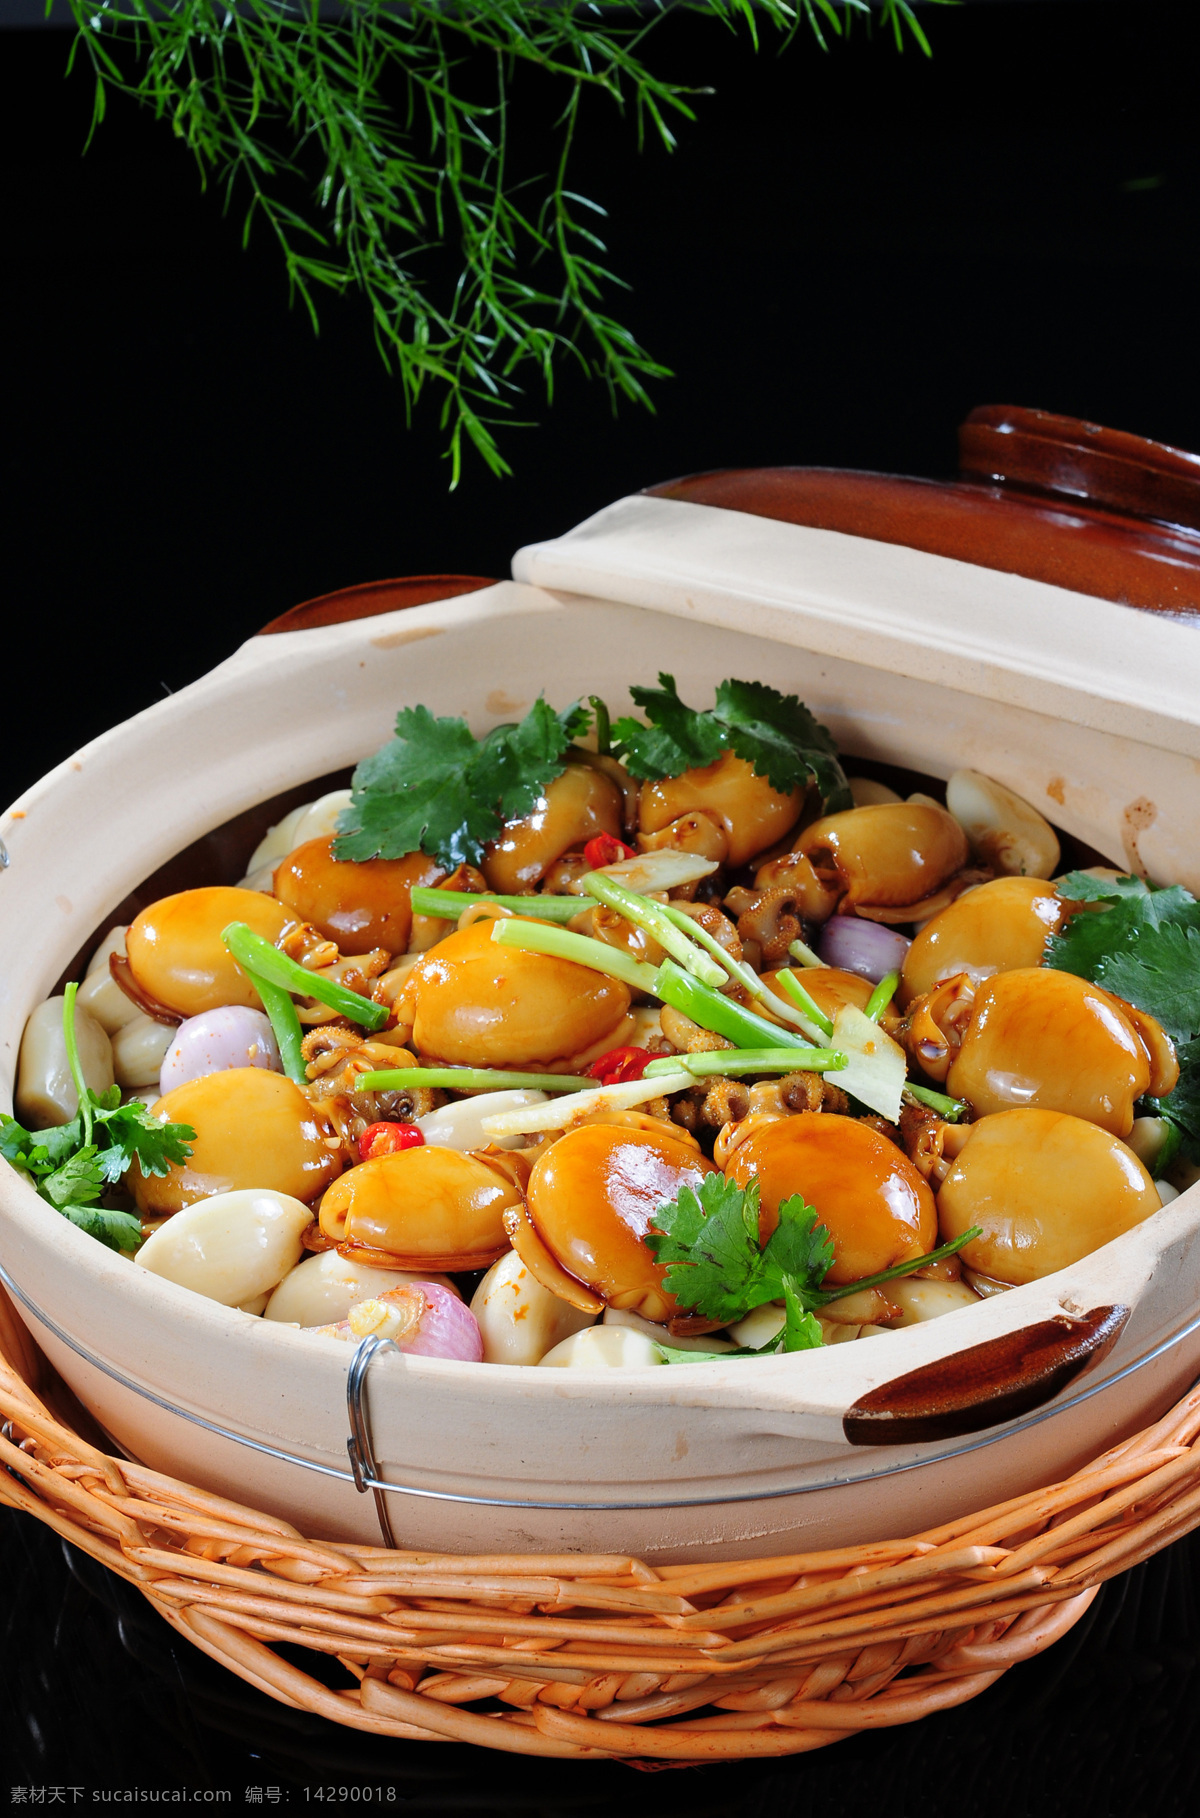 美食 砂锅 乌鱼蛋 煲 烧腊 蜜汁 广式 中餐 粤菜 传统菜式 传统美食 餐饮美食